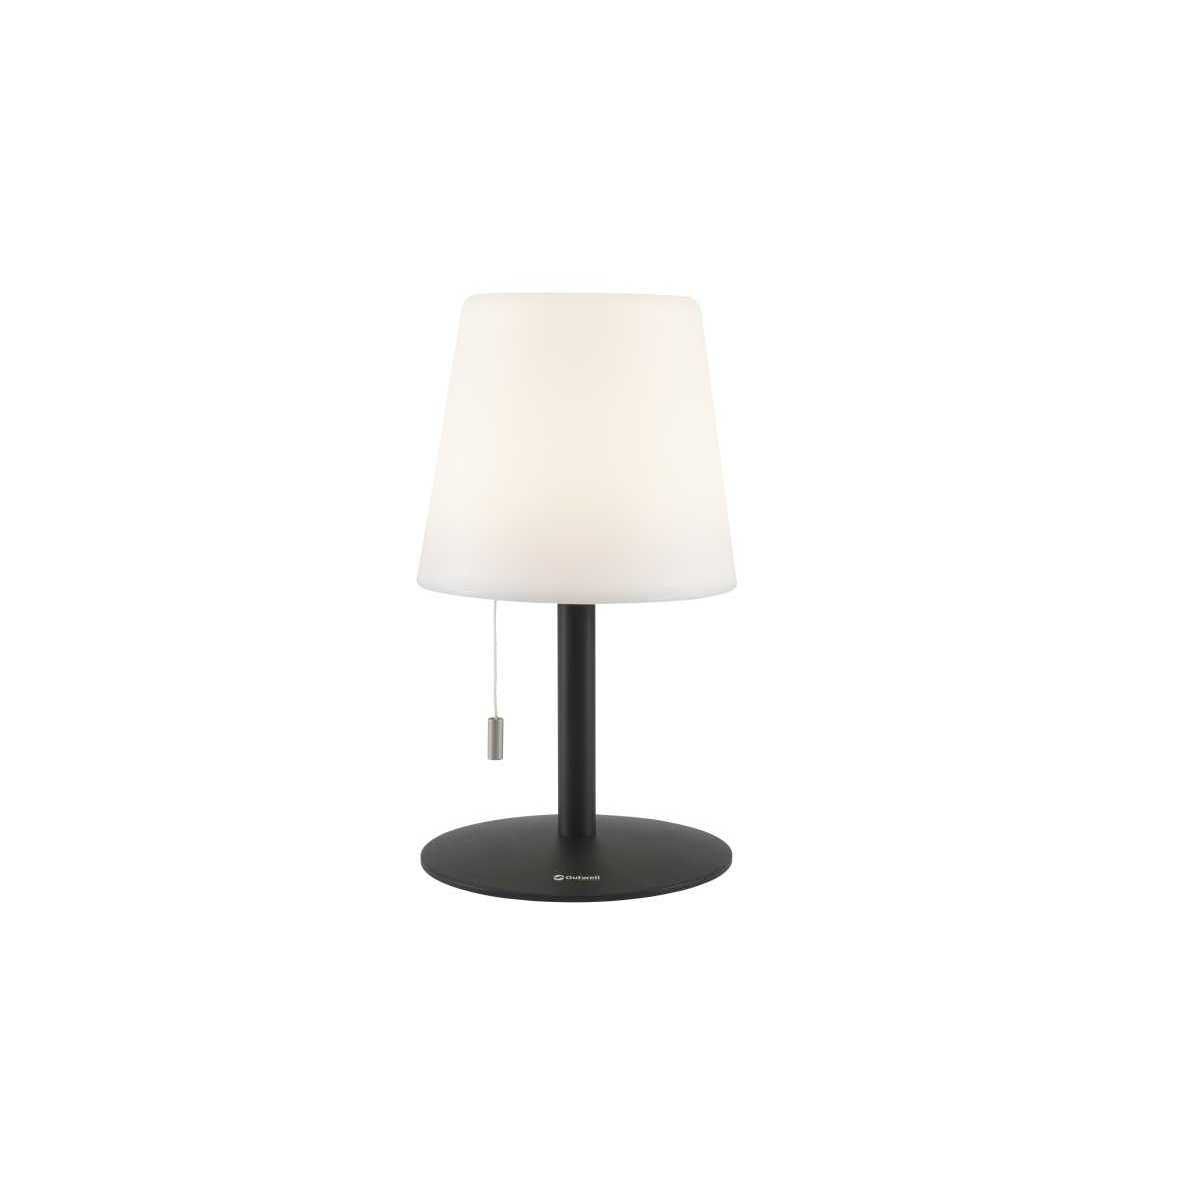 Outwell Ara Lamp Tischlampe wiederaufladbar weiss - 651154